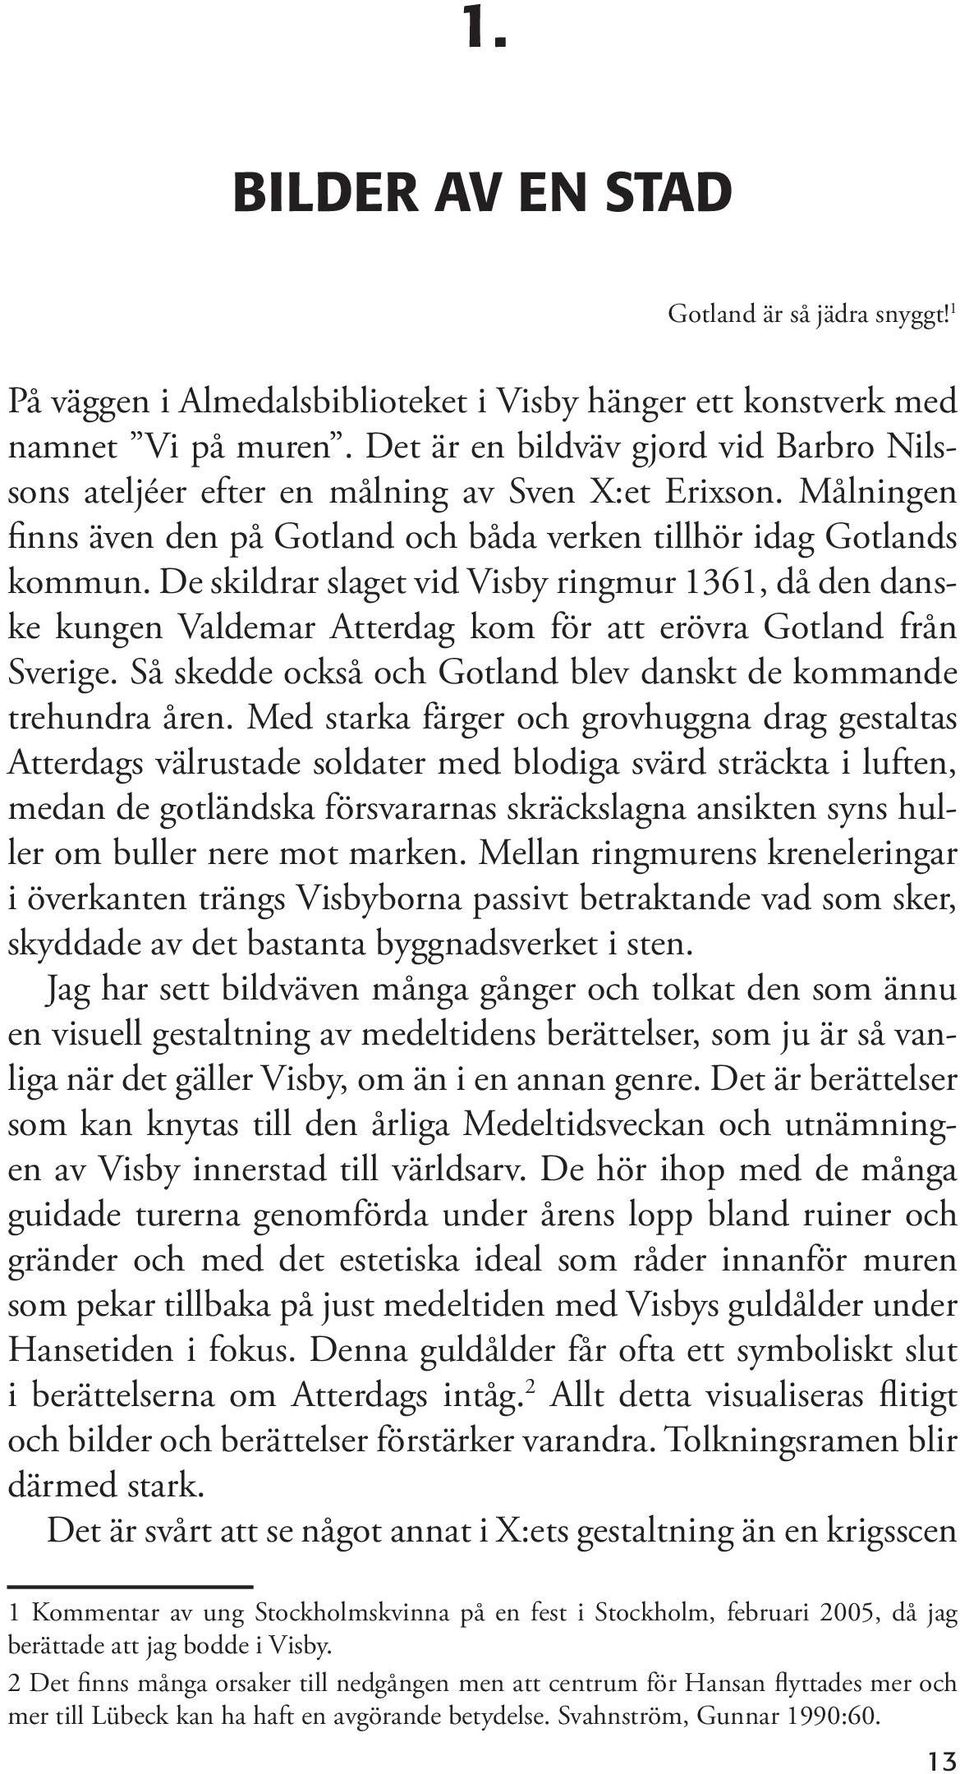 De skildrar slaget vid Visby ringmur 1361, då den danske kungen Valdemar Atterdag kom för att erövra Gotland från Sverige. Så skedde också och Gotland blev danskt de kommande trehundra åren.